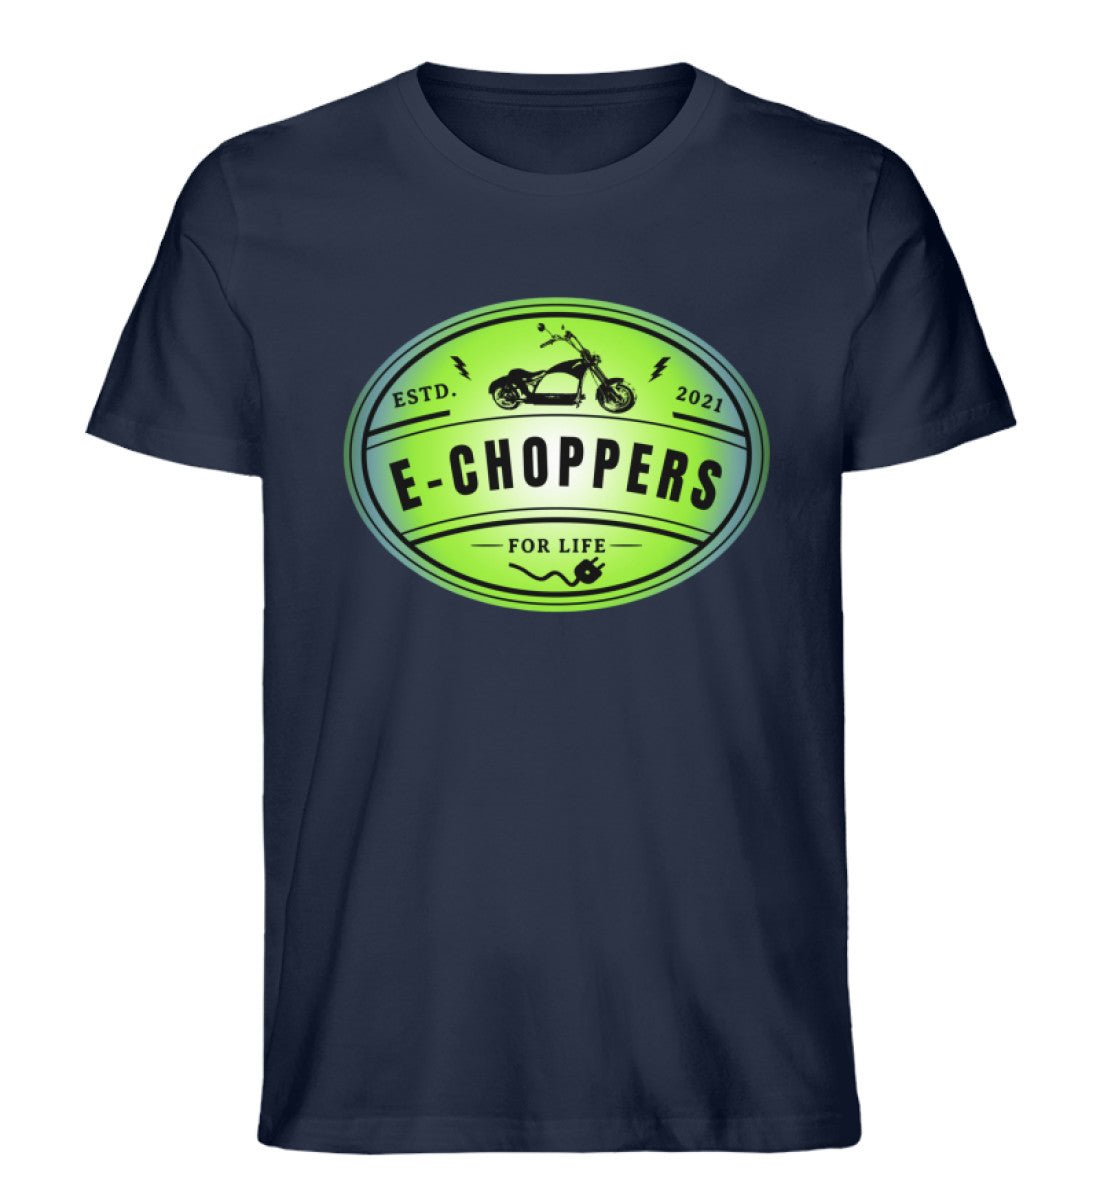 Zeige deine Leidenschaft: Das E-Chopper Premium Bio T-Shirt